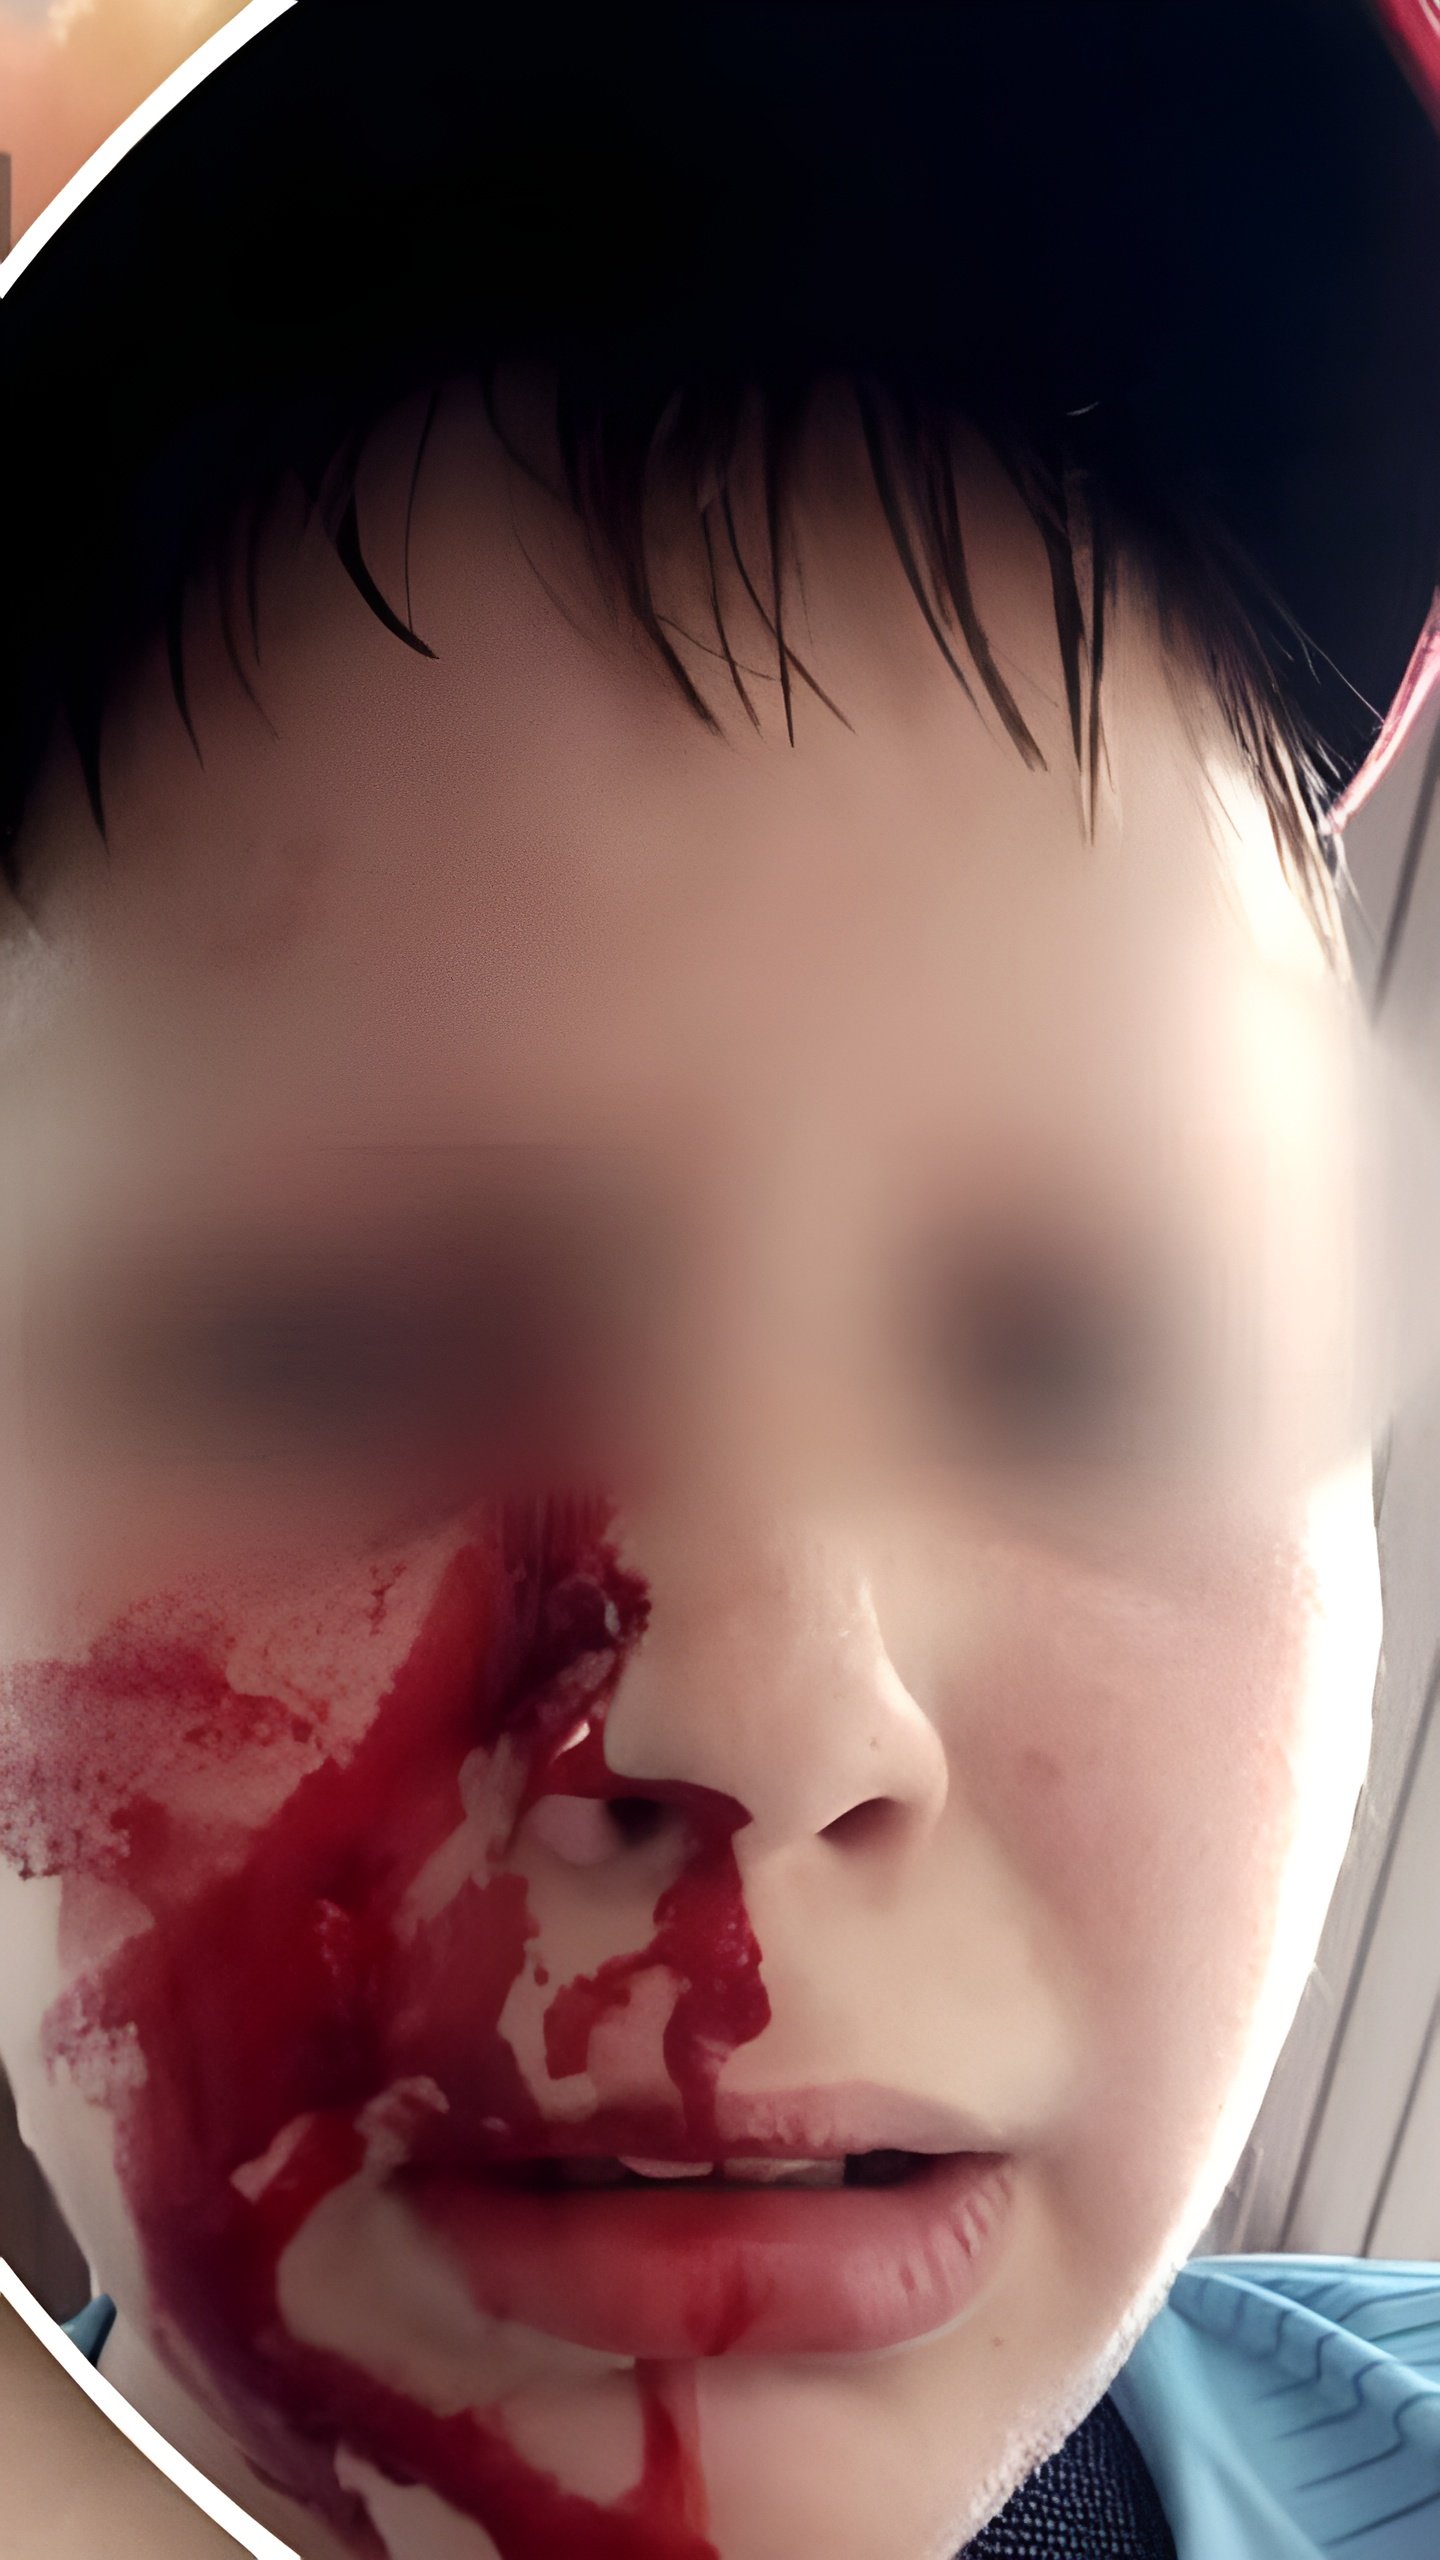 Школьник подвергся нападению на детской площадке в Новосибирске